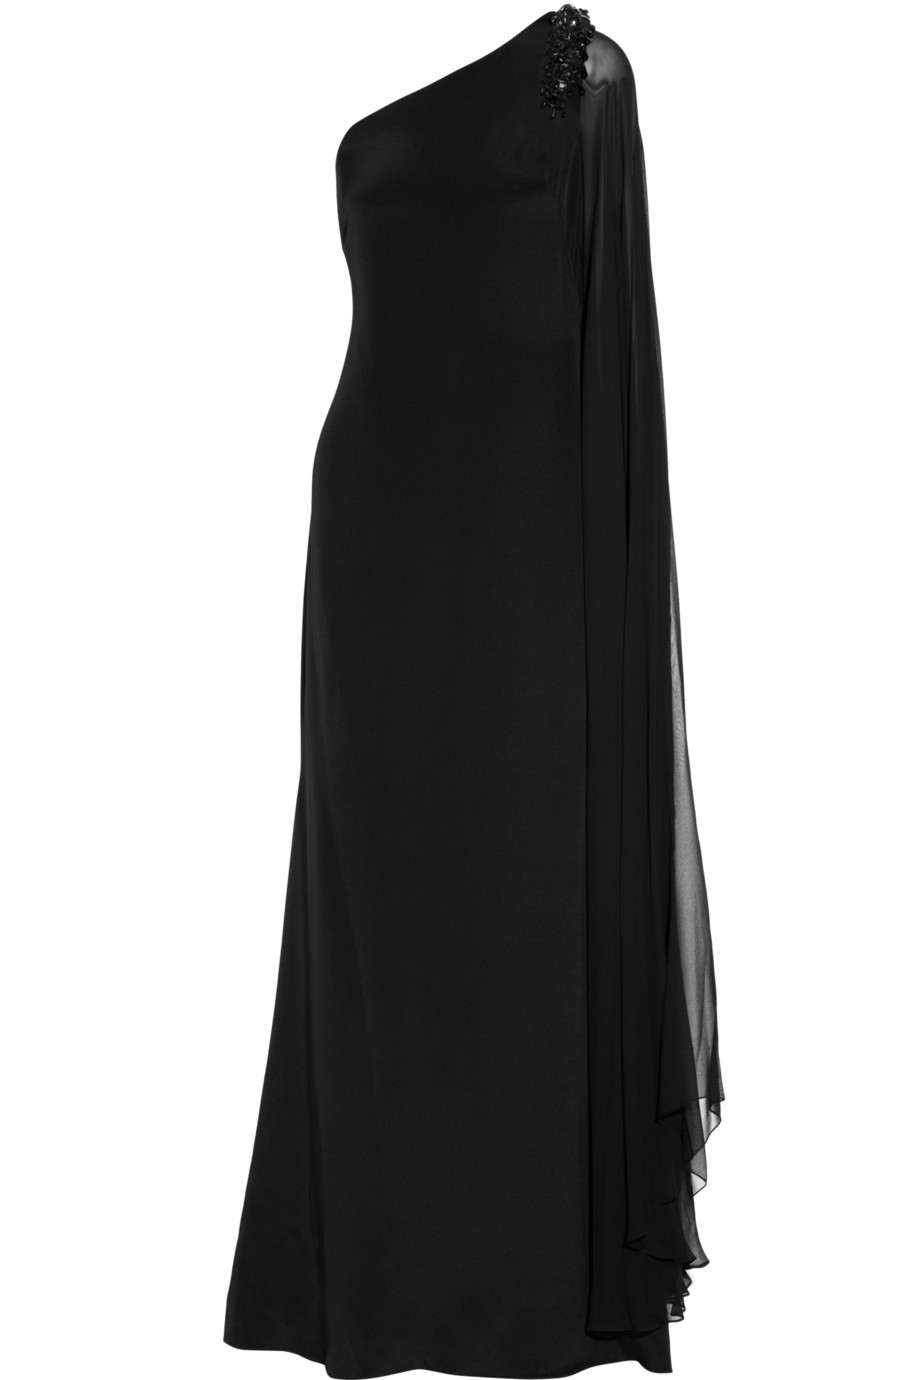 Marchesa notte One Shoulder Silk Gown in Black - Lyst